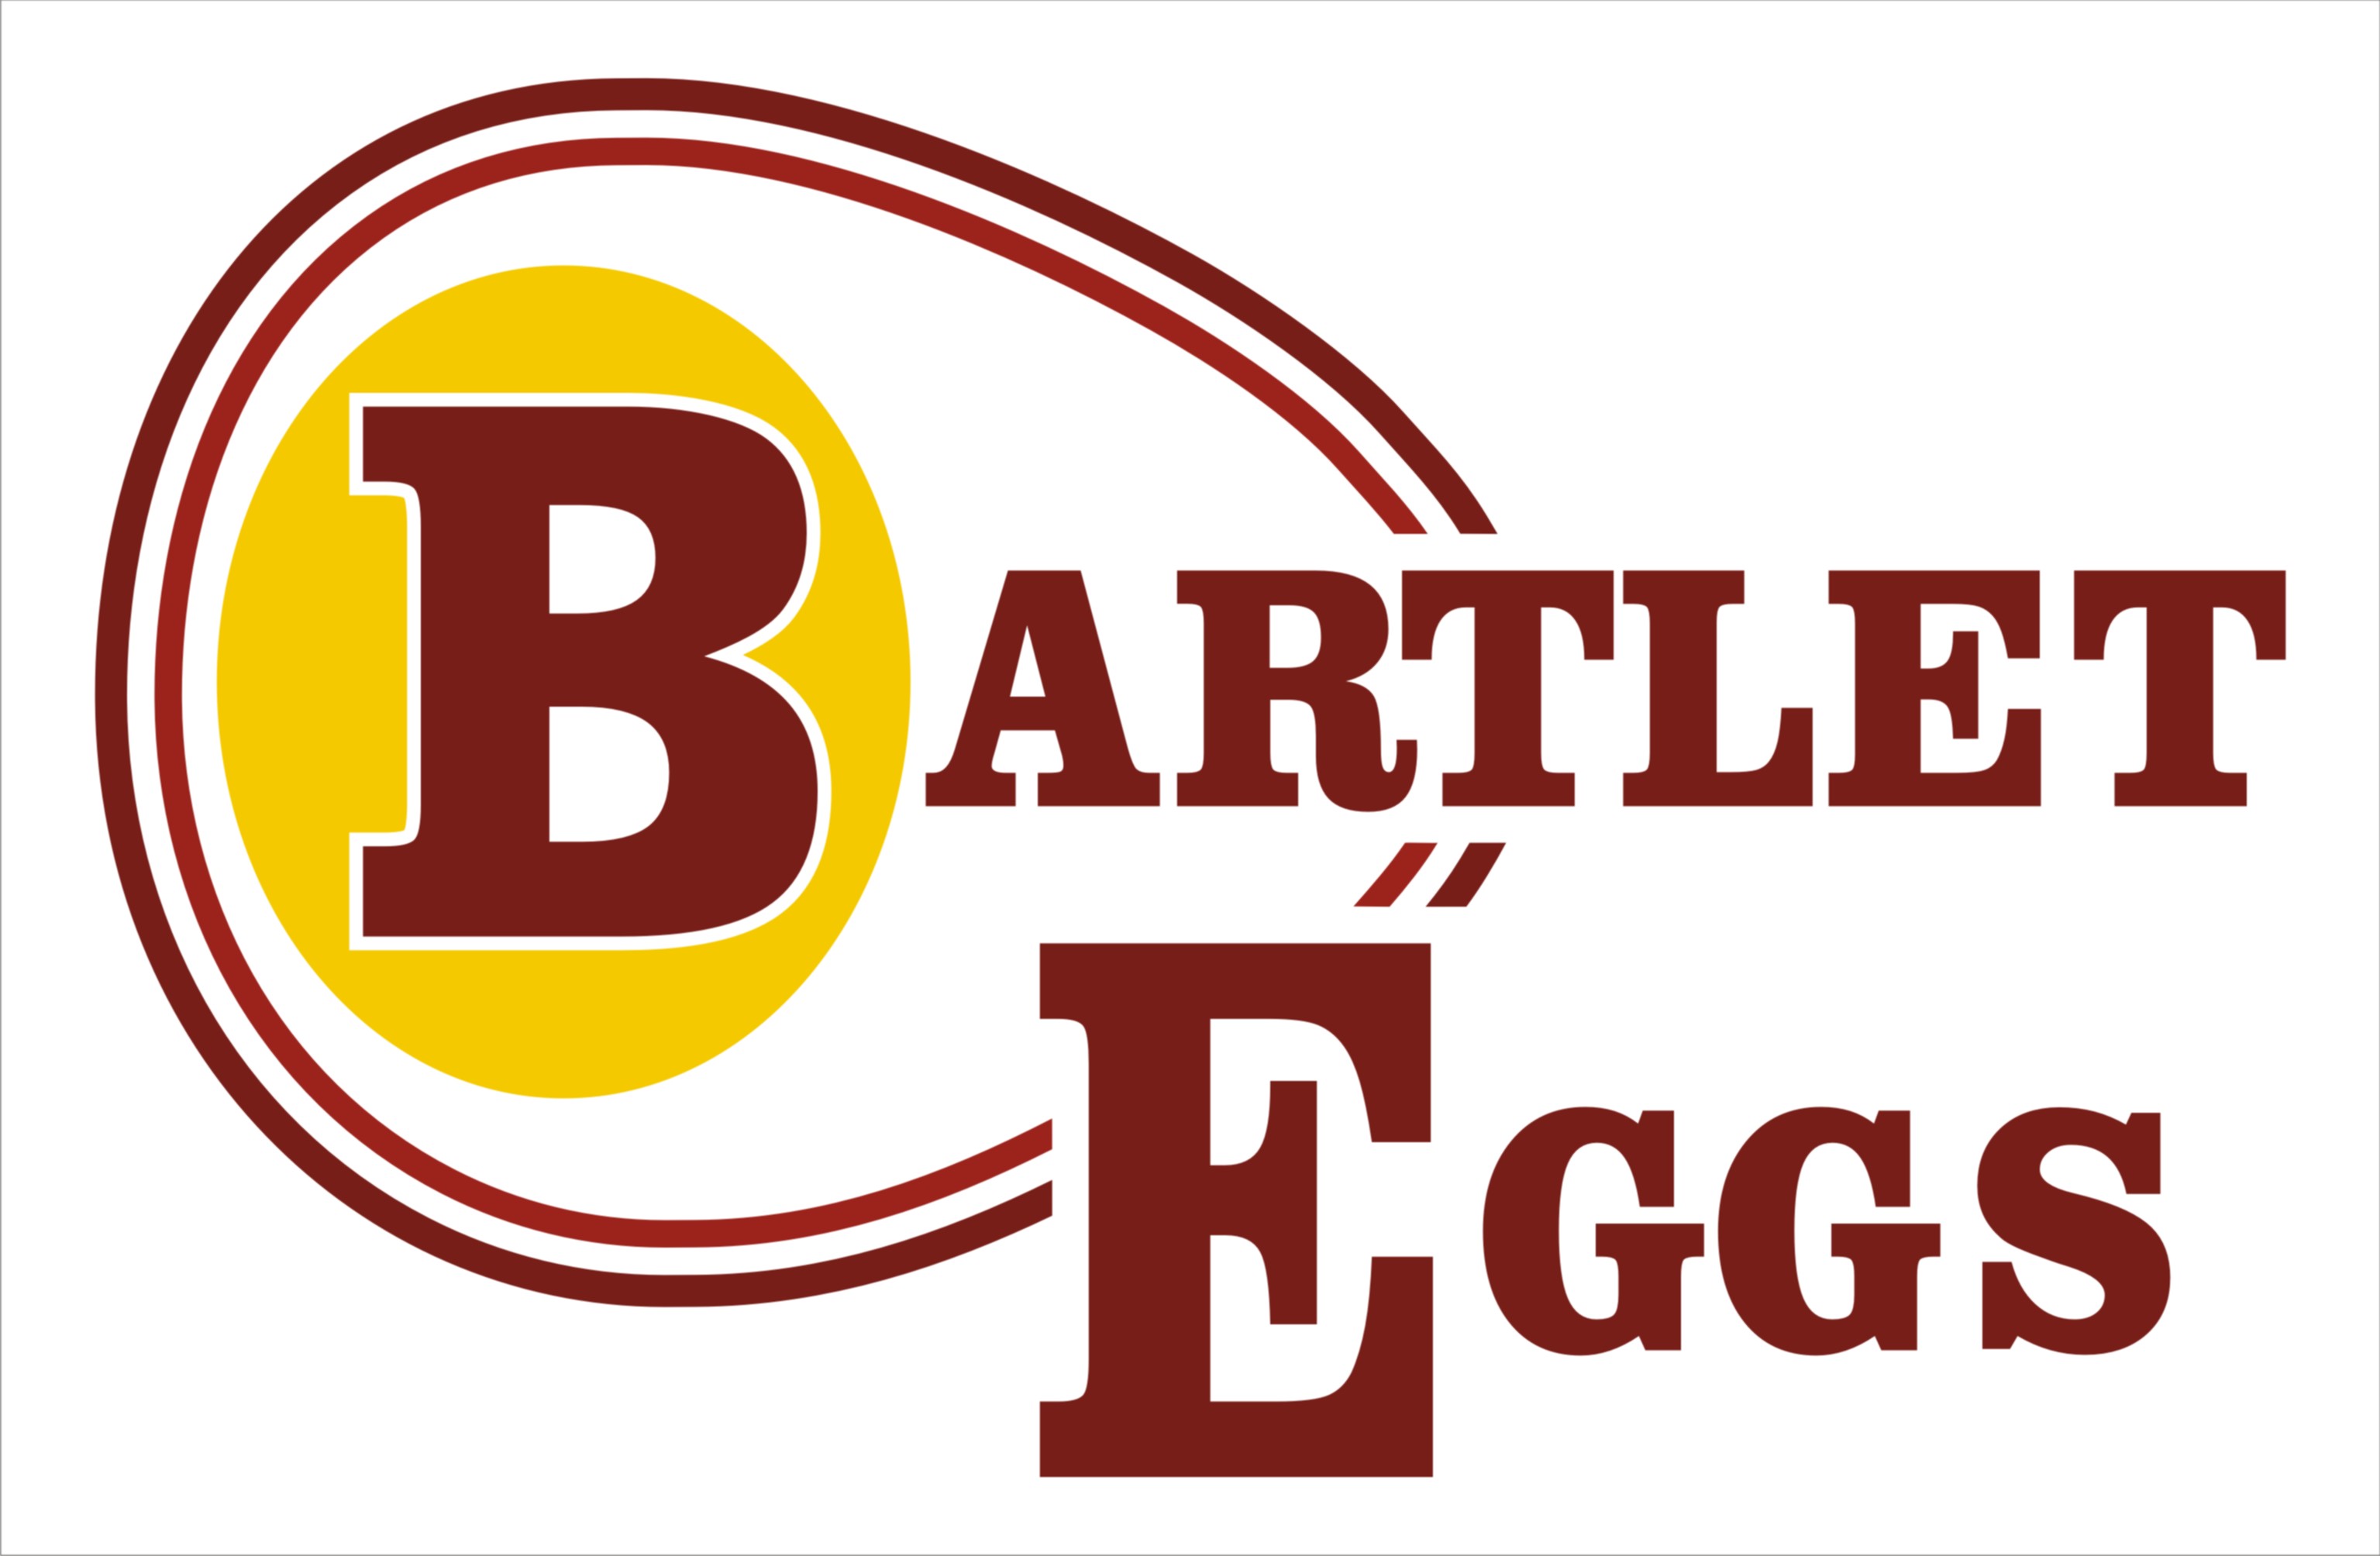 Bartlet Eggs